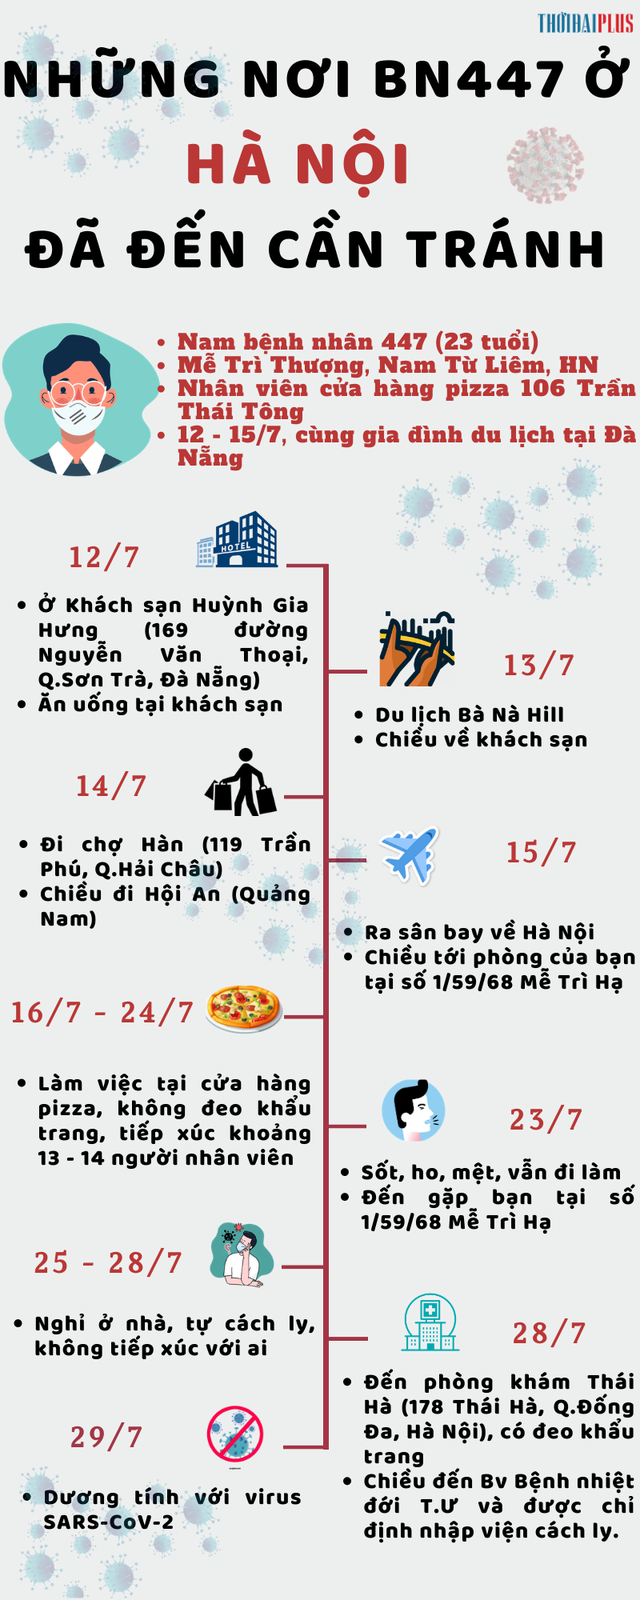 [Infographic] Những nơi bệnh nhân 447 ở Hà Nội đã đến người dân cần biết để phòng tránh - Ảnh 2.